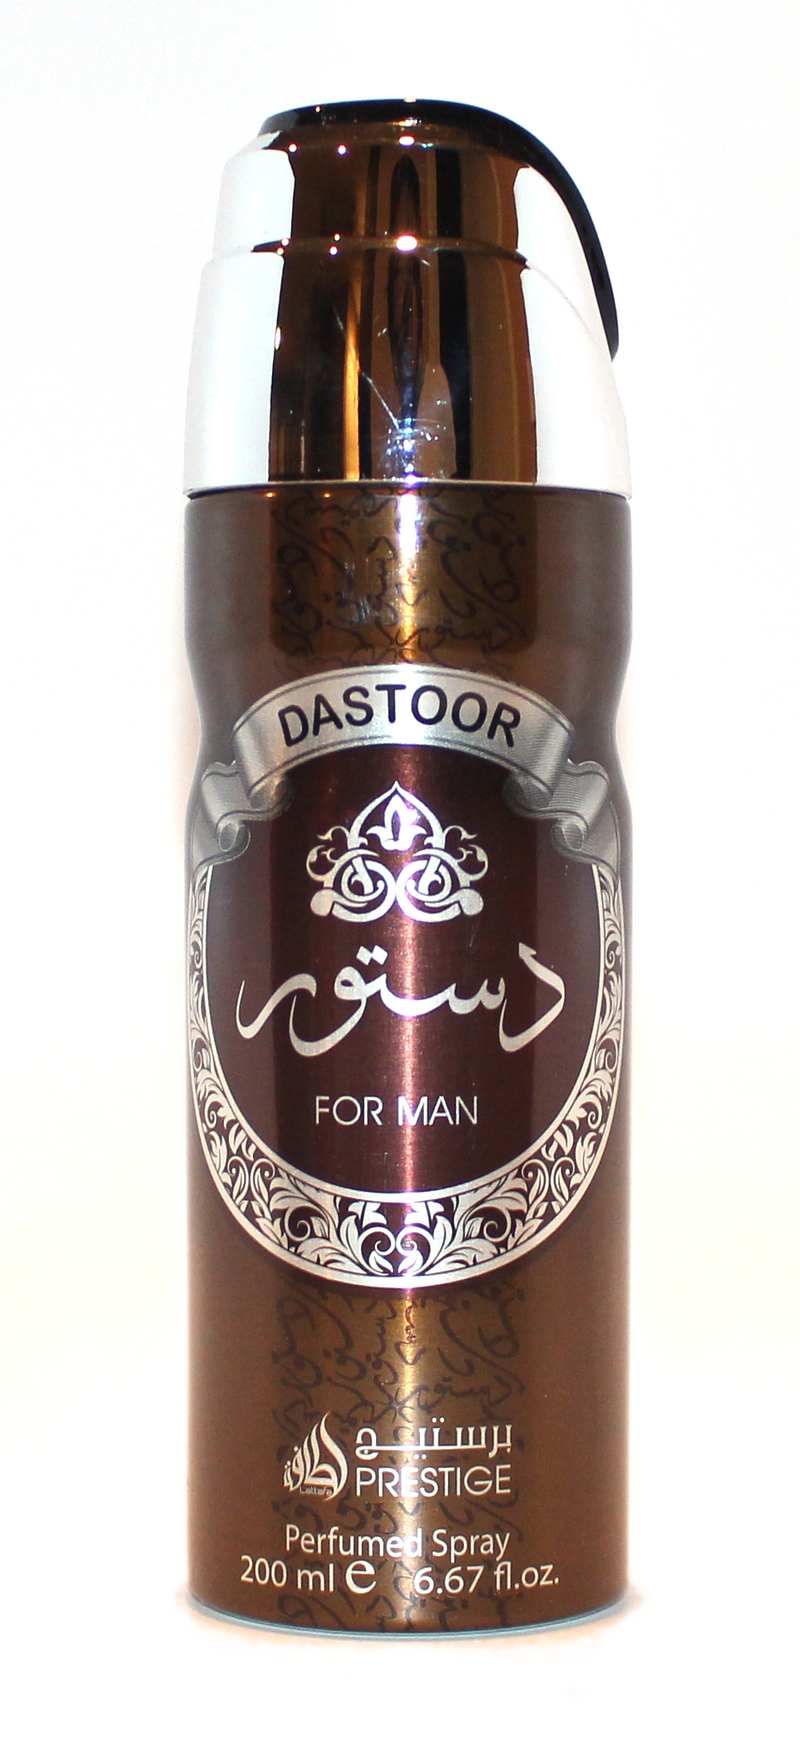 Dastoor for Man - Deodorant Perfumed Spray (200 ml/6.67 fl.oz) by Lattafa